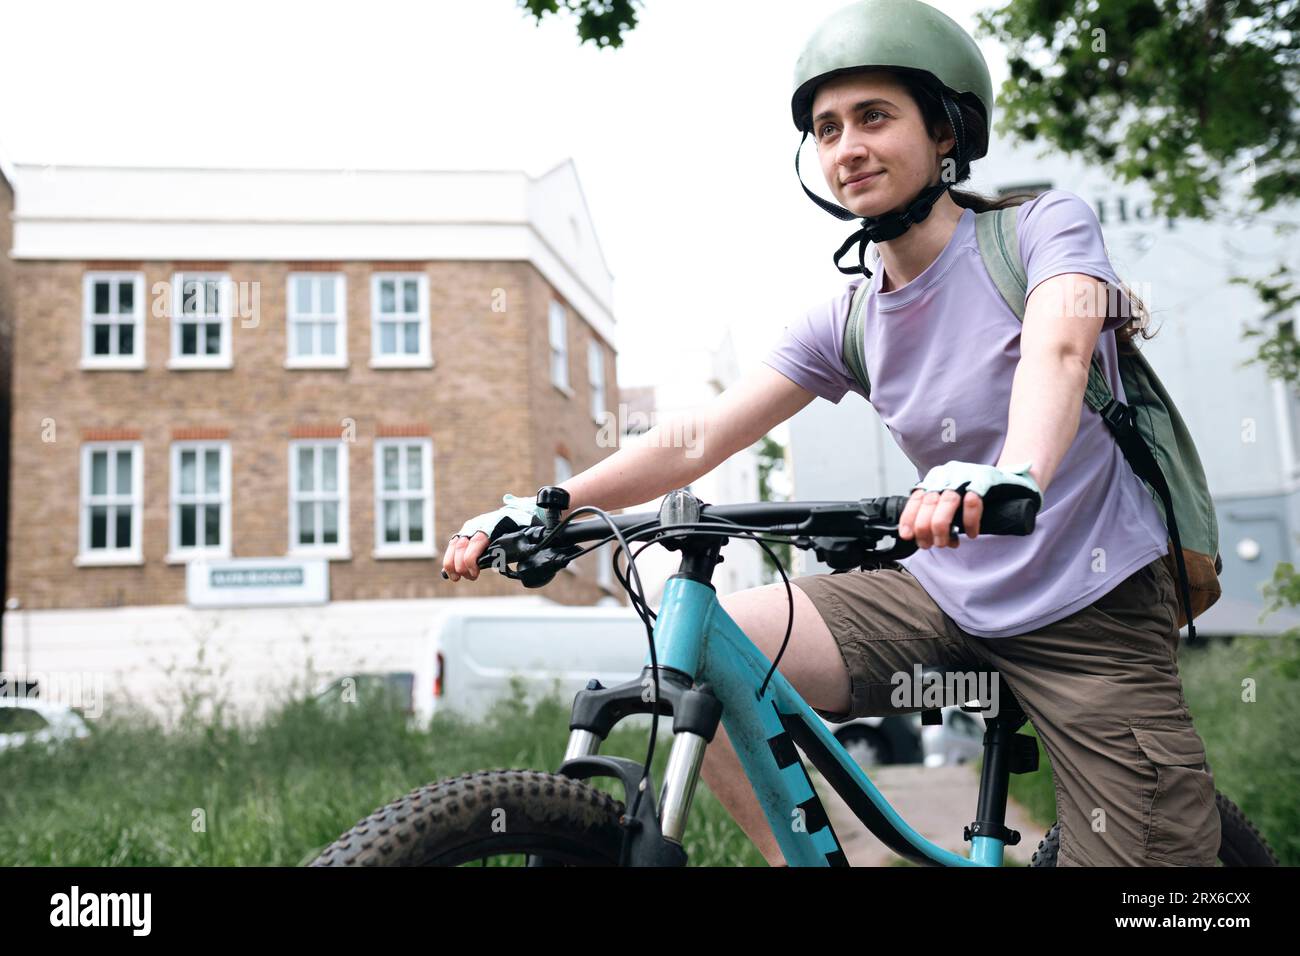 Lächelnde Frau, die Helm trägt und auf dem Fahrrad sitzt Stockfoto